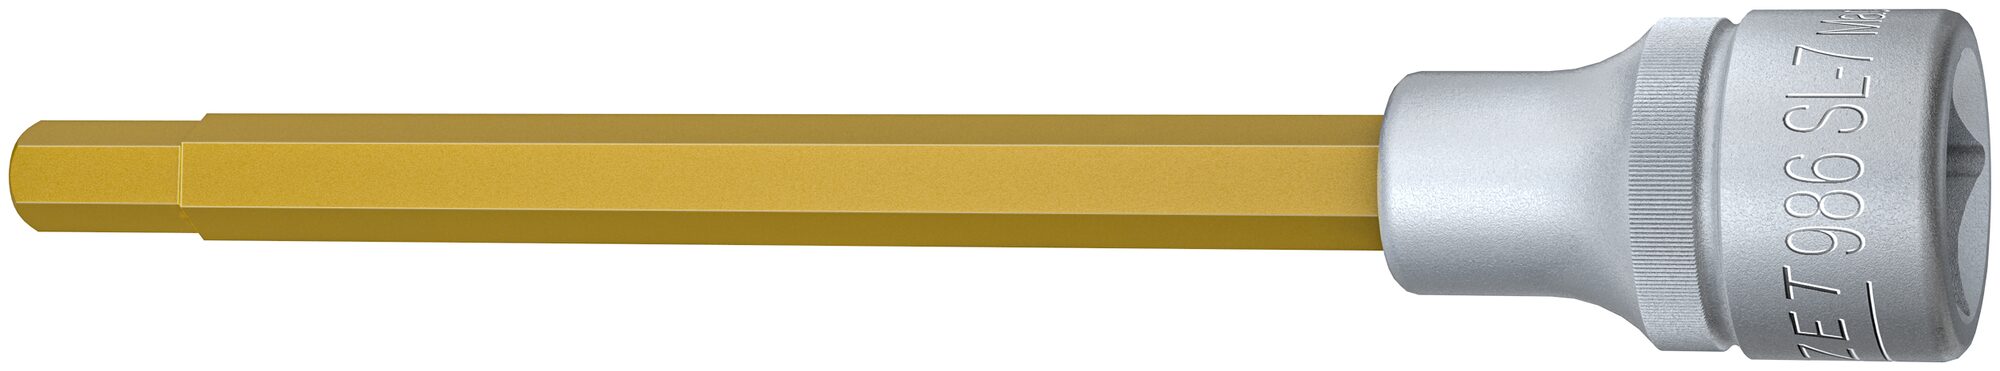 HAZET Schraubendreher-Steckschlüsseleinsatz 986SL-7 · Vierkant hohl 12,5 mm (1/2 Zoll) · Innen Sechskant Profil · 7 mm